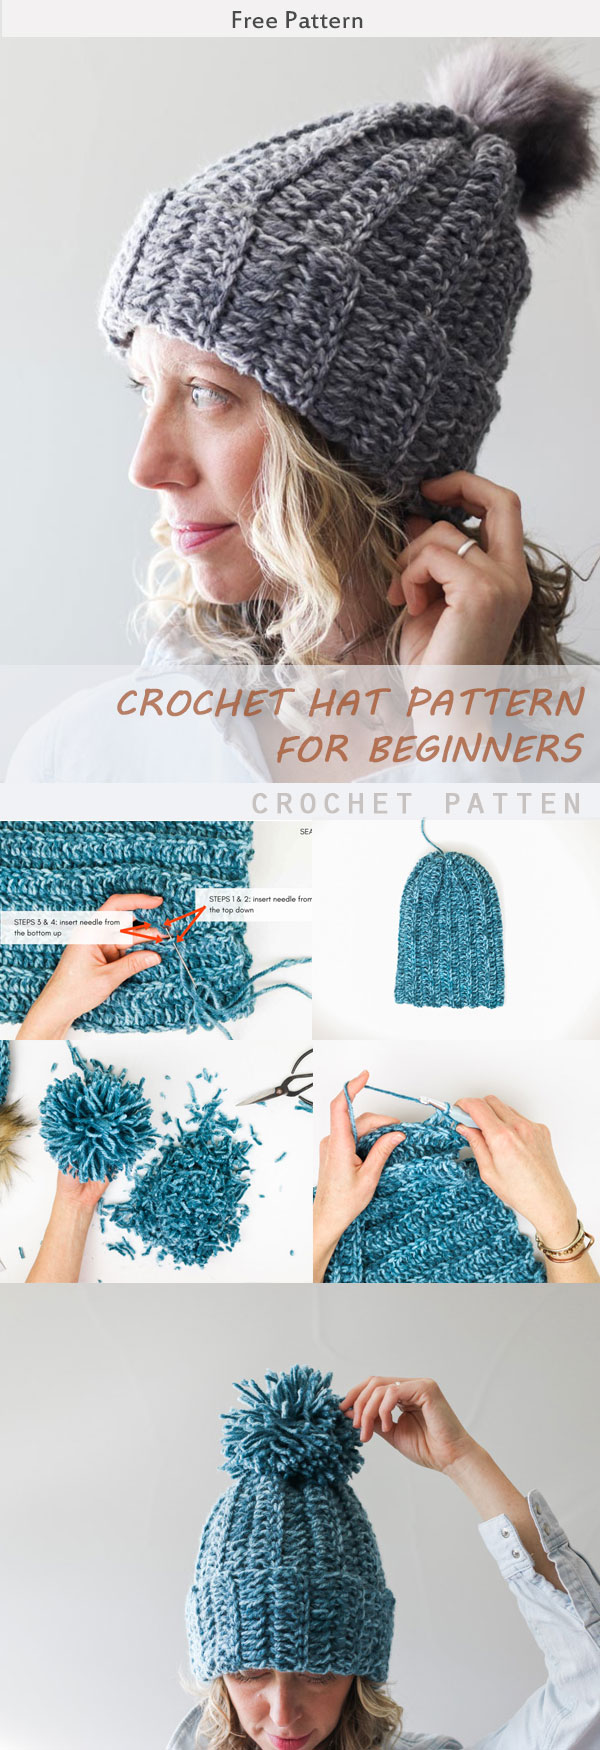 Crochet Free Hat Pattern For Beginners